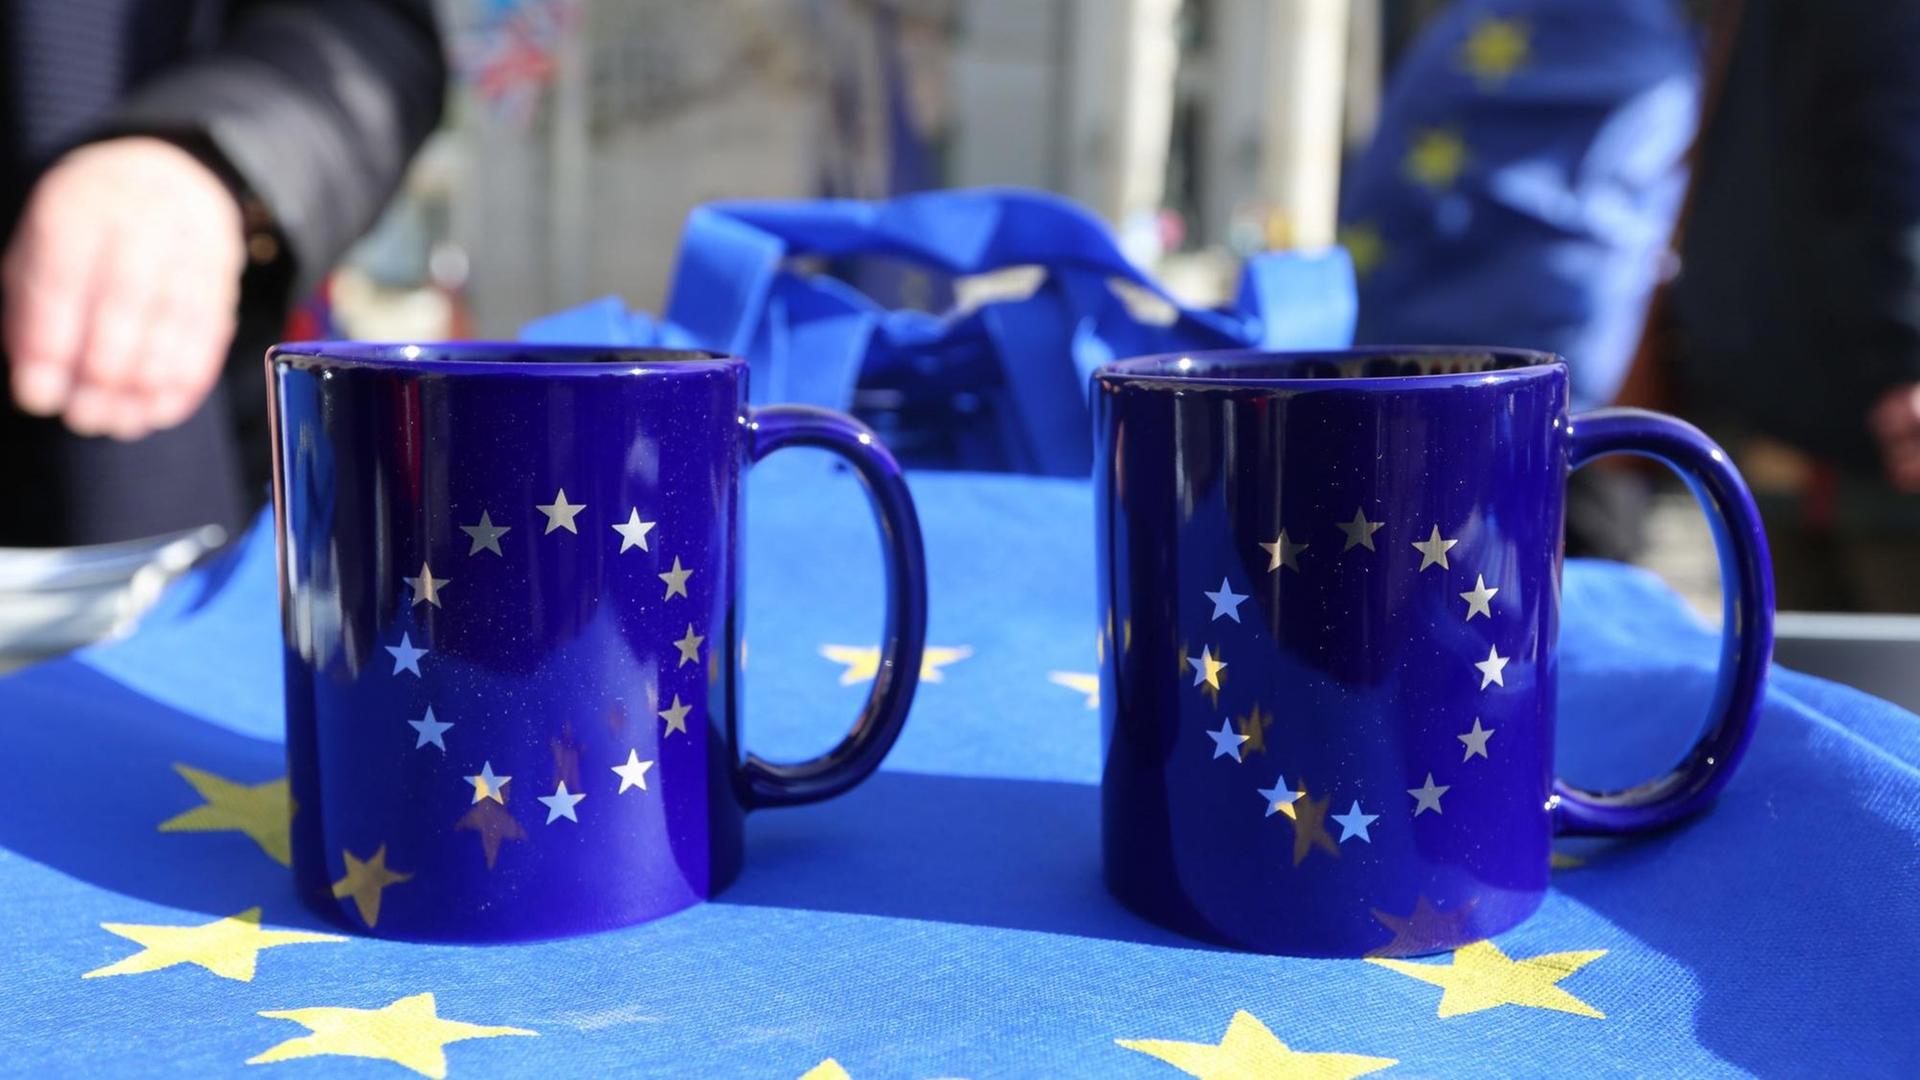 Zwei Tassen mit Europa-Flaggen-Aufdruck stehen auf einem Tisch, der von einer Europaflagge bedeckt ist